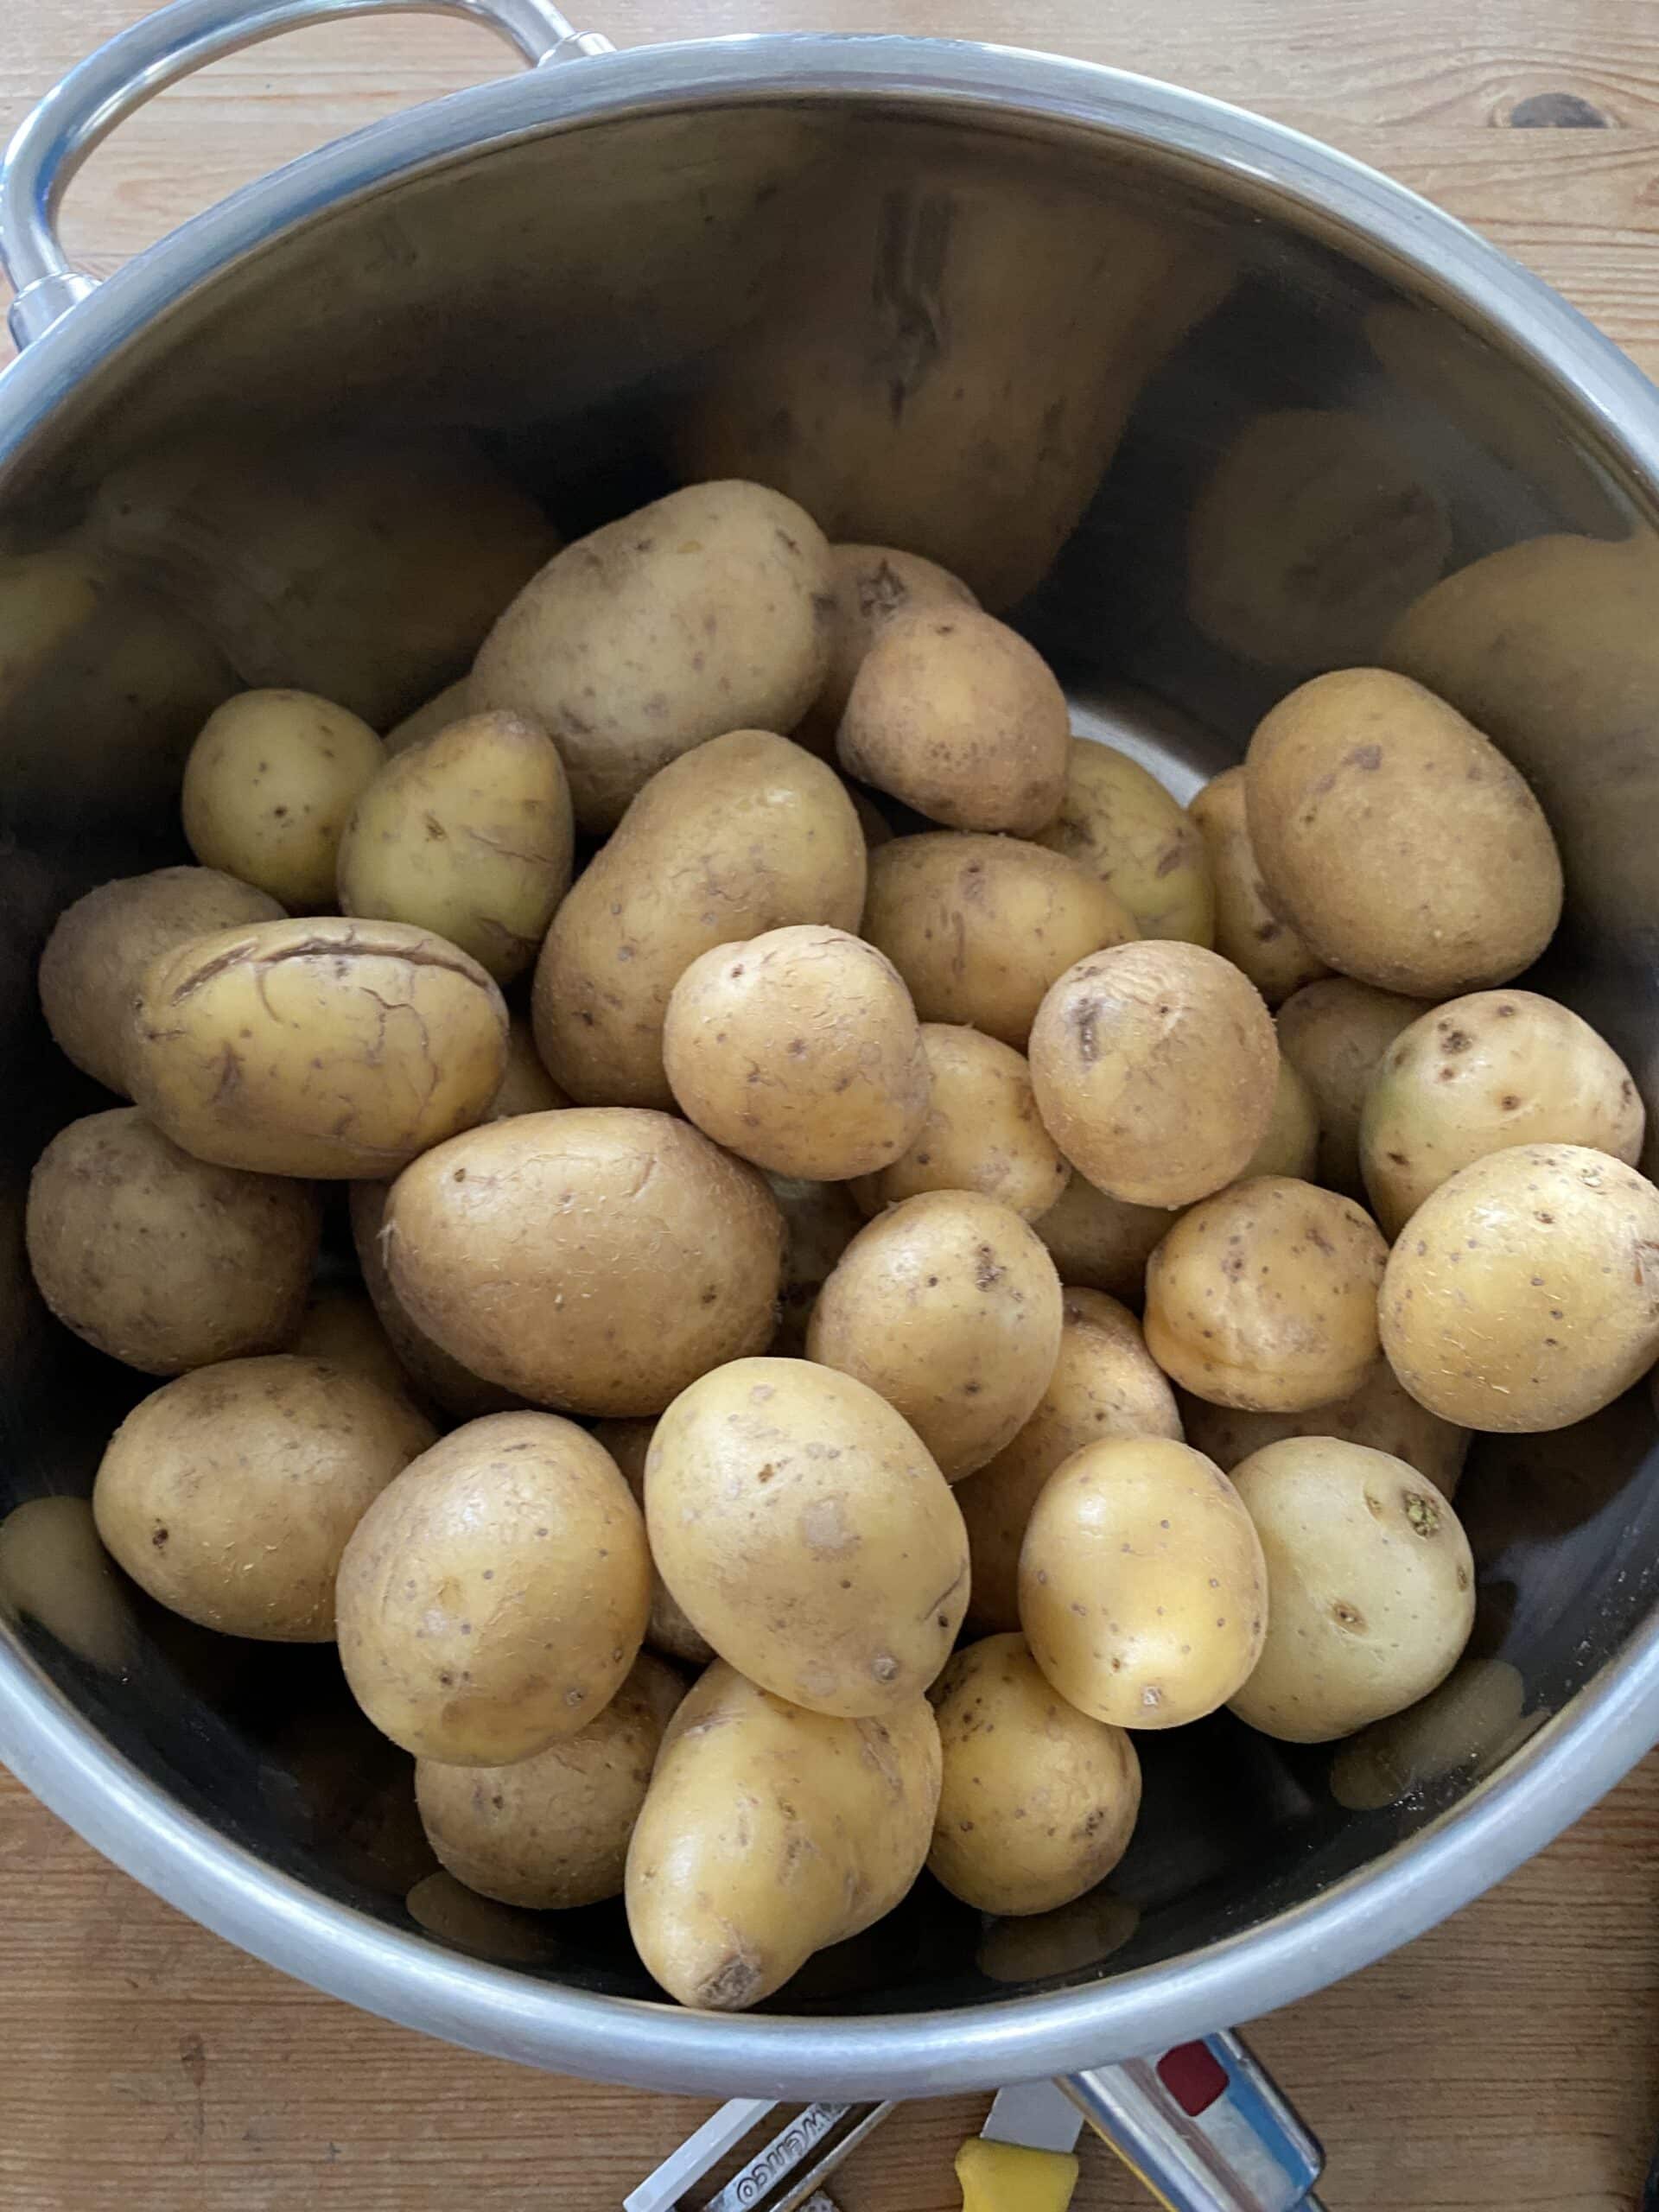 Um danach 2,5 Kilo Kartoffeln zu schälen.